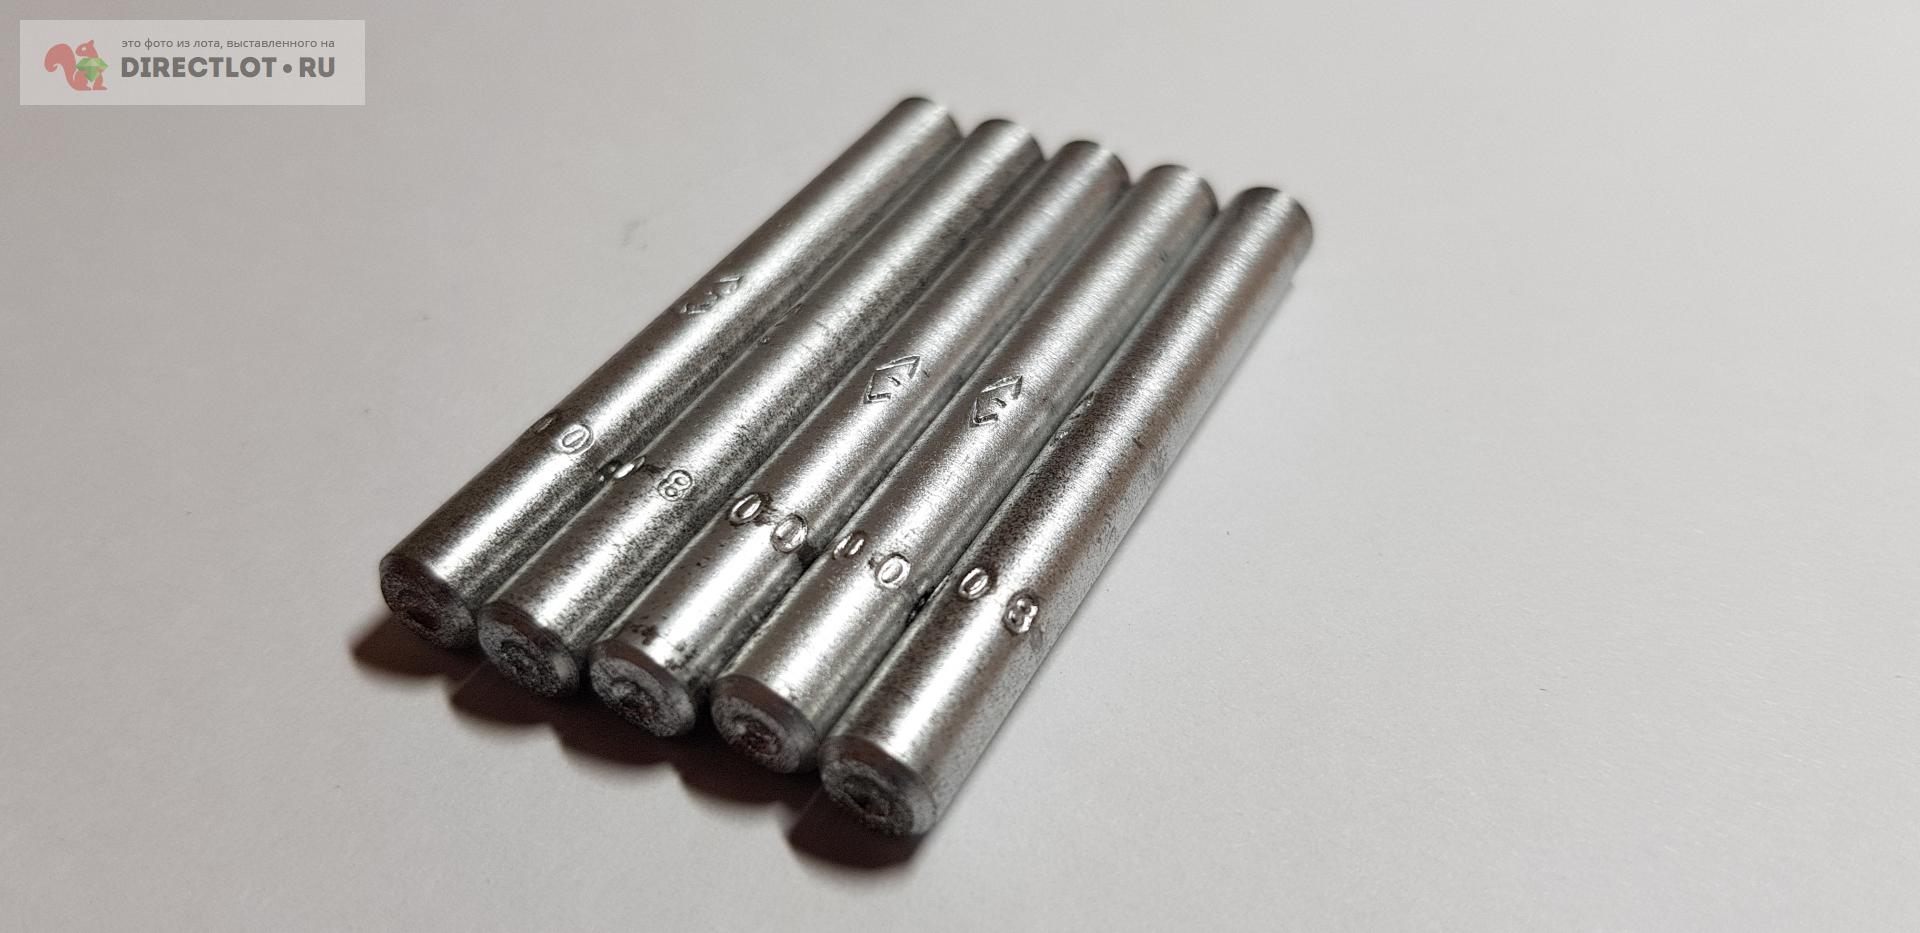  в оправе Ф6х50 алмазный карандаш  в Липецке цена 550 Р на .